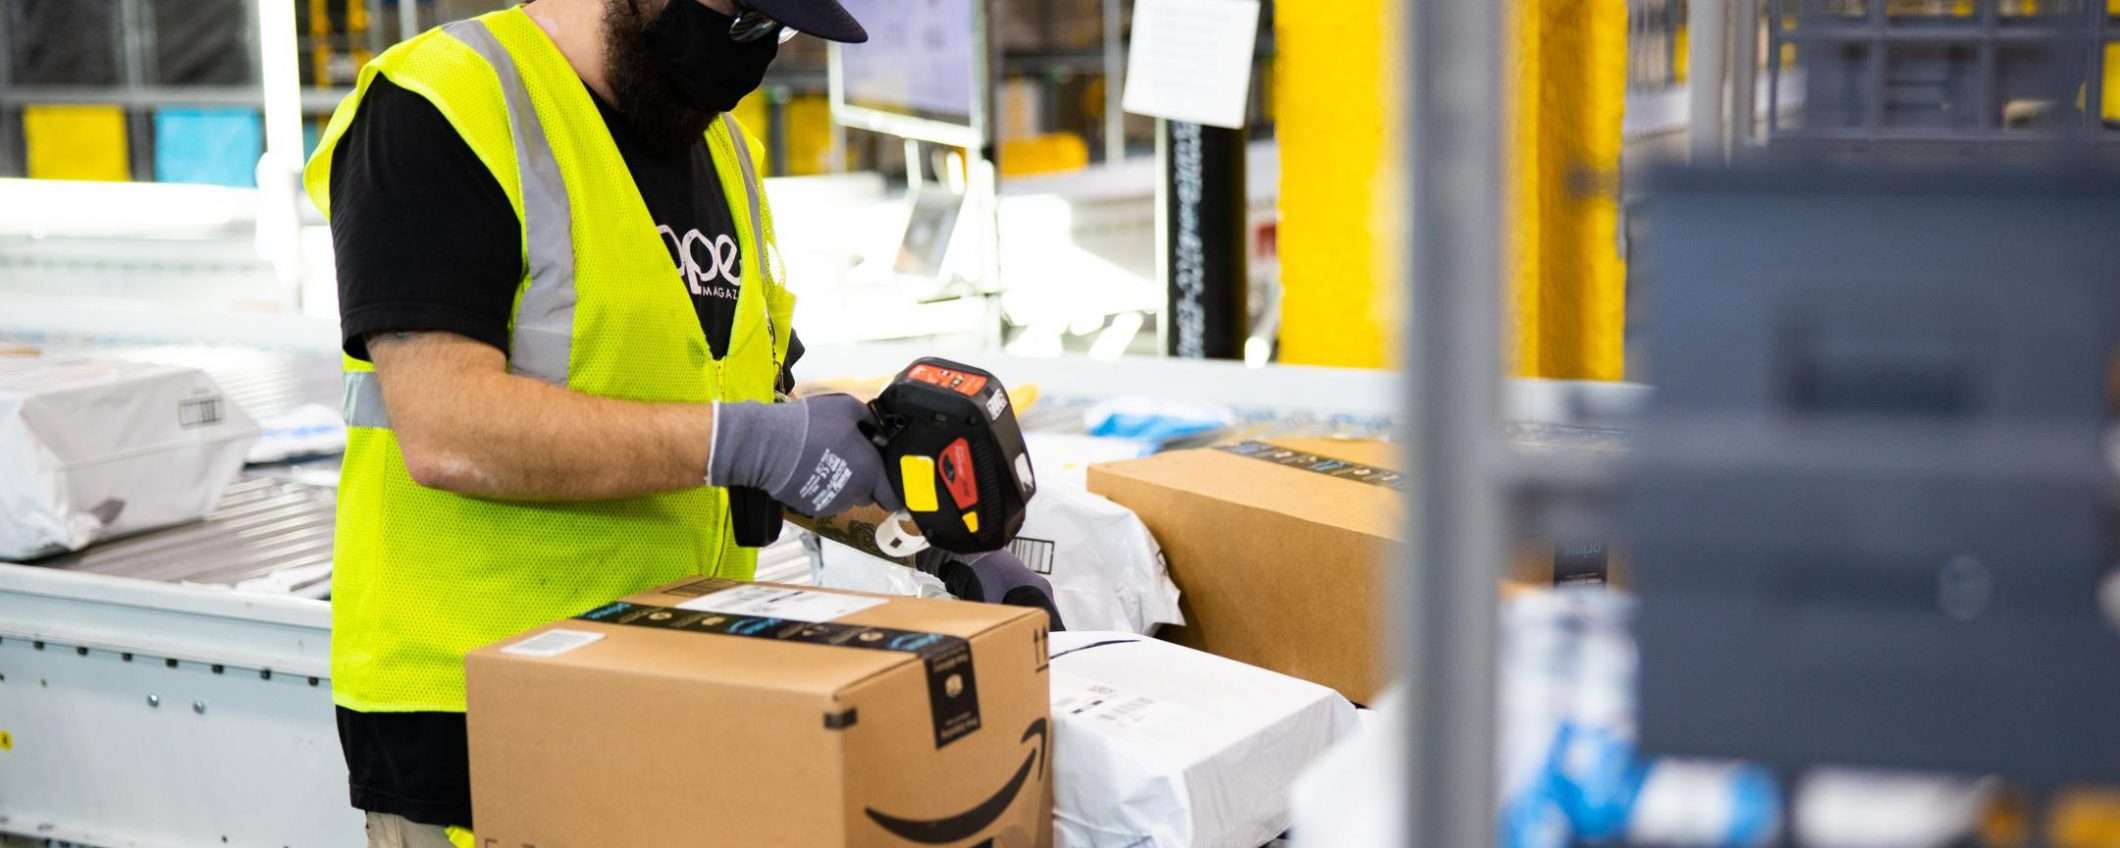 Amazon ha assunto 2600 persone in Italia nel 2020